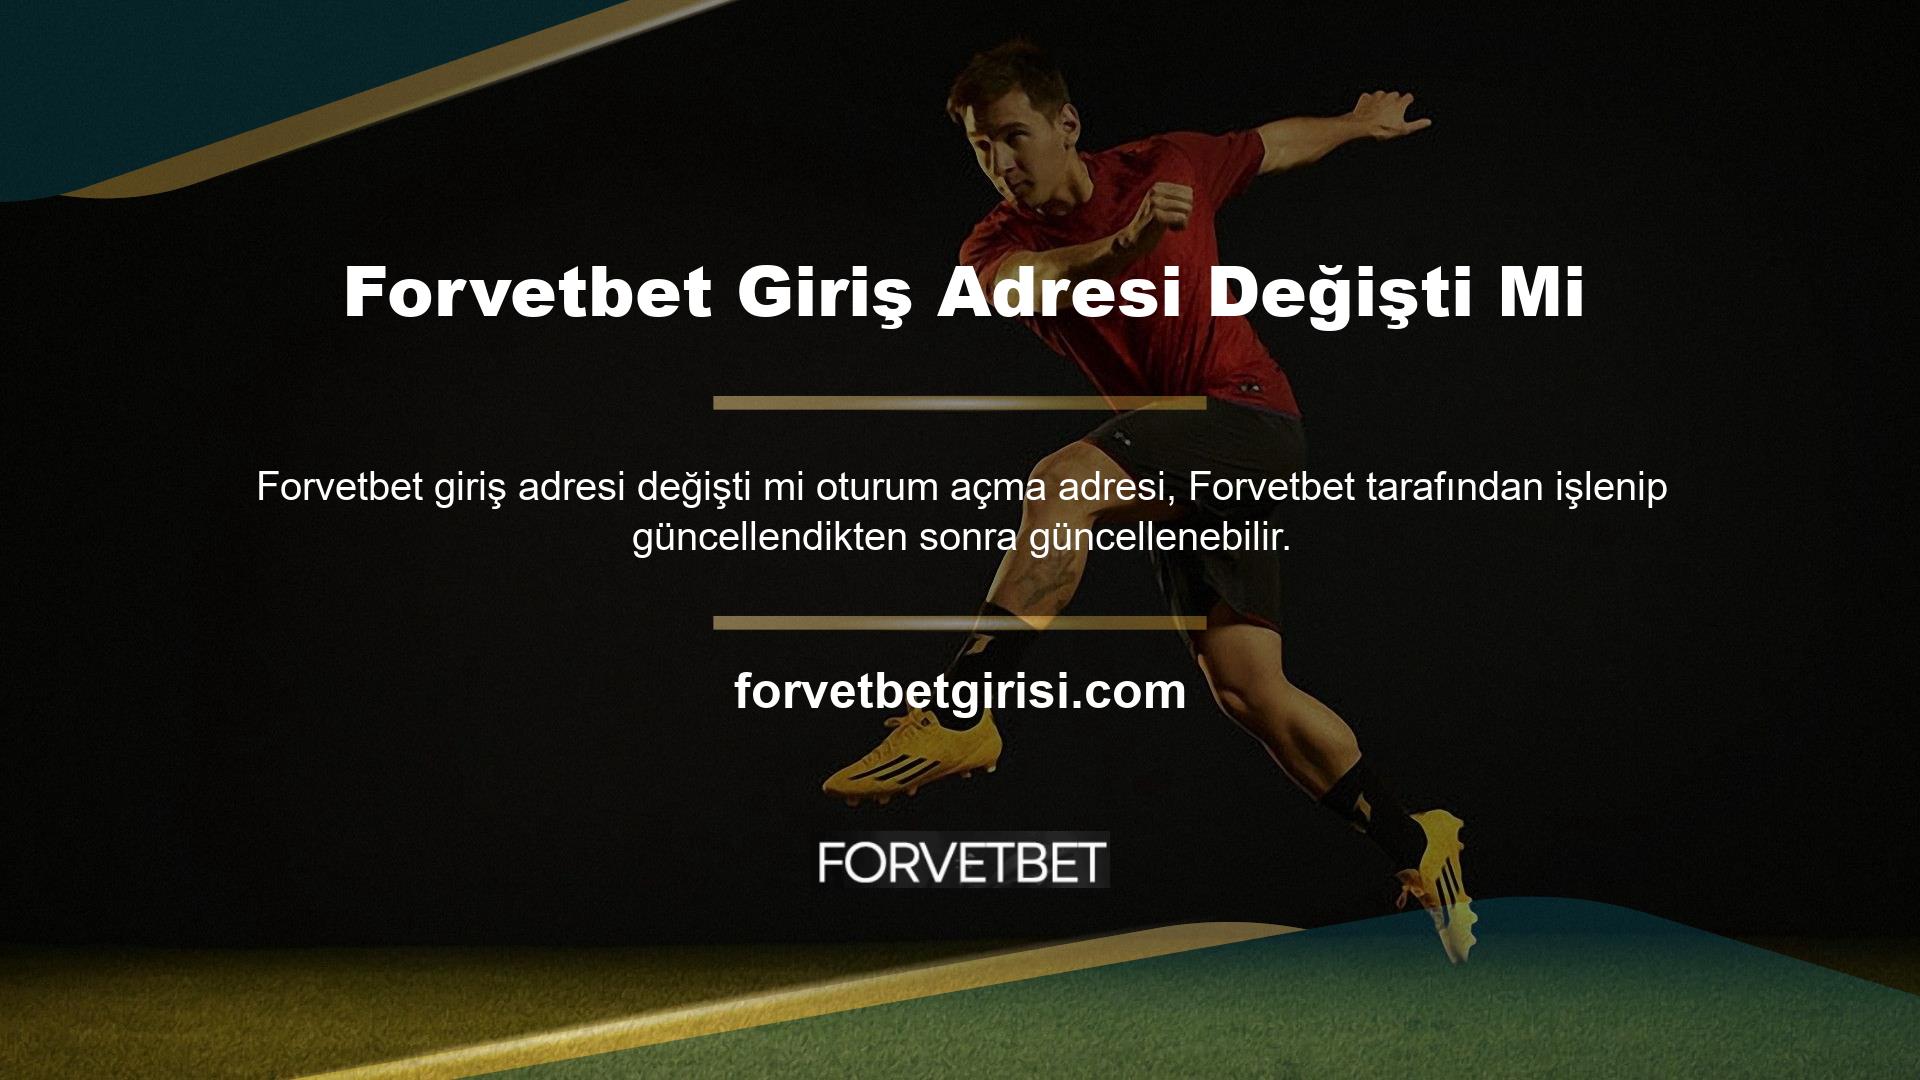 Yeni giriş adresinizi kullanarak Forvetbet web sitesine başarıyla erişebilirsiniz